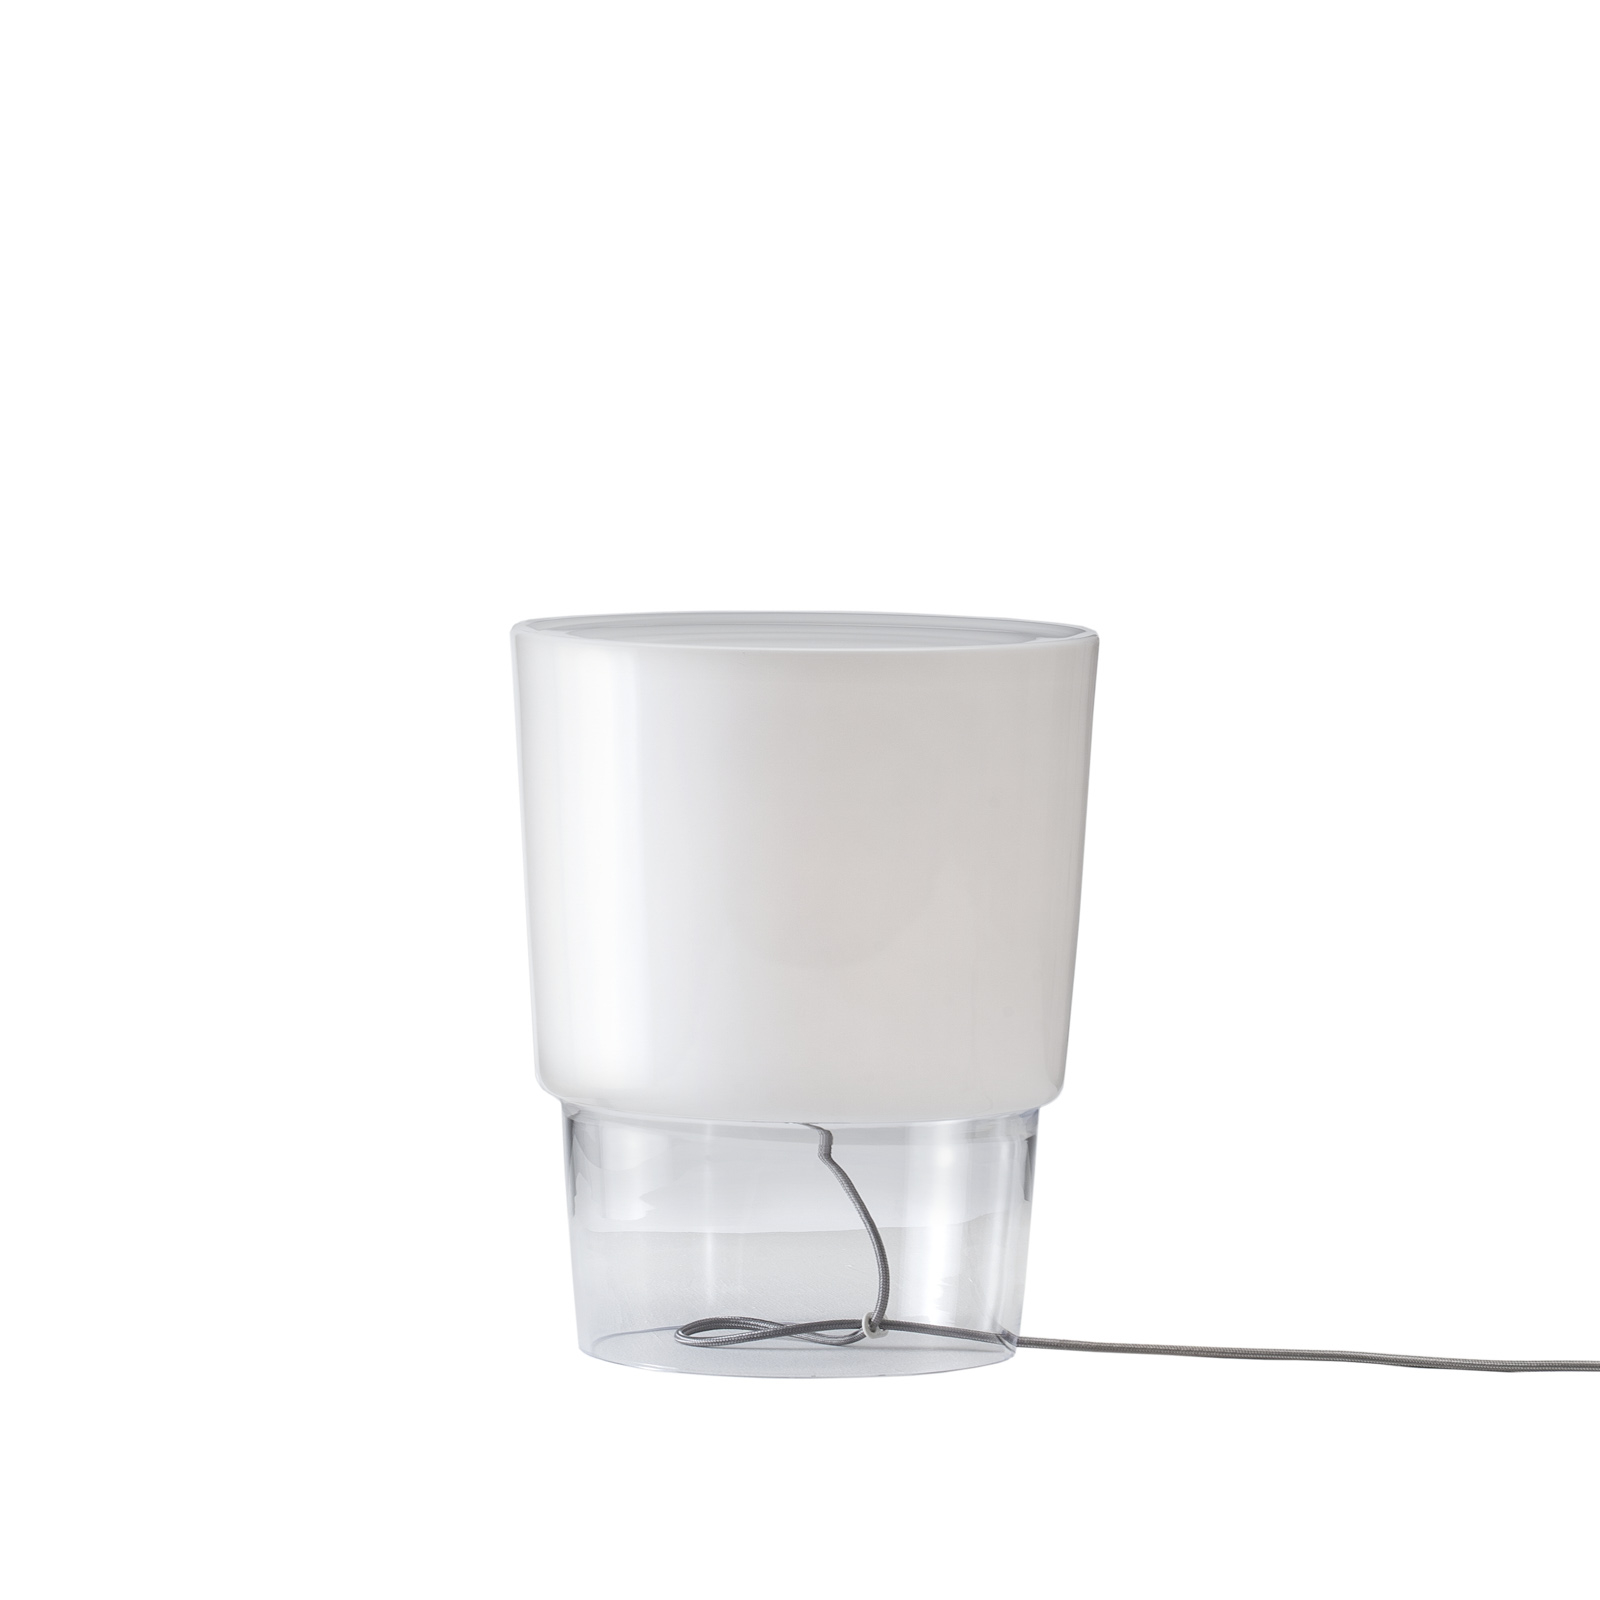 Prandina Vestale T3 lámpara de mesa blanca/clara